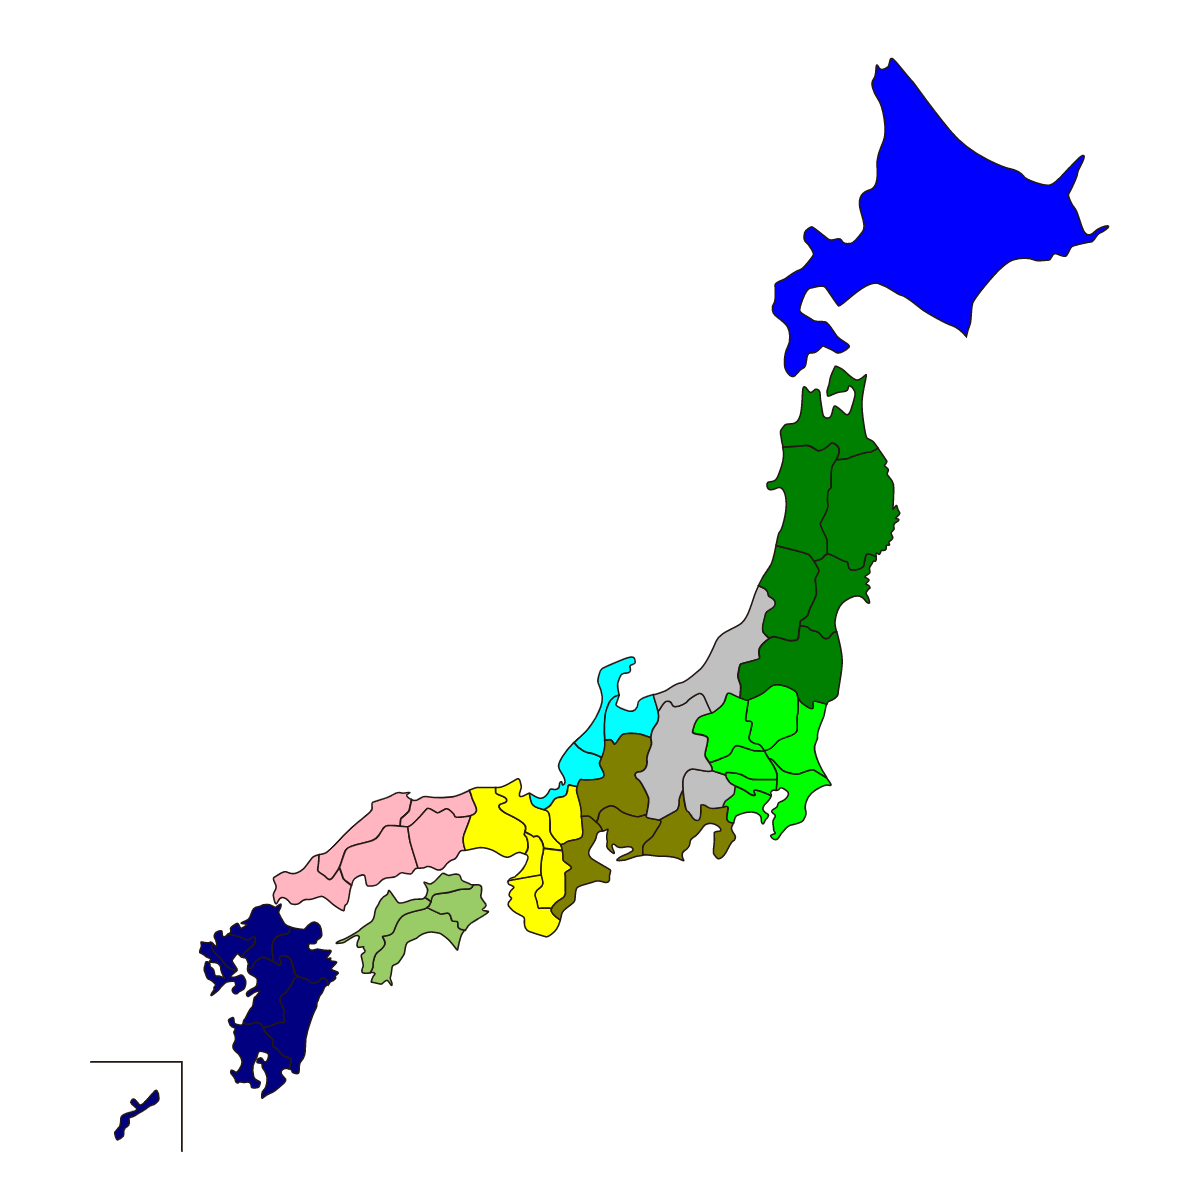 日本地図地区ごと色塗り